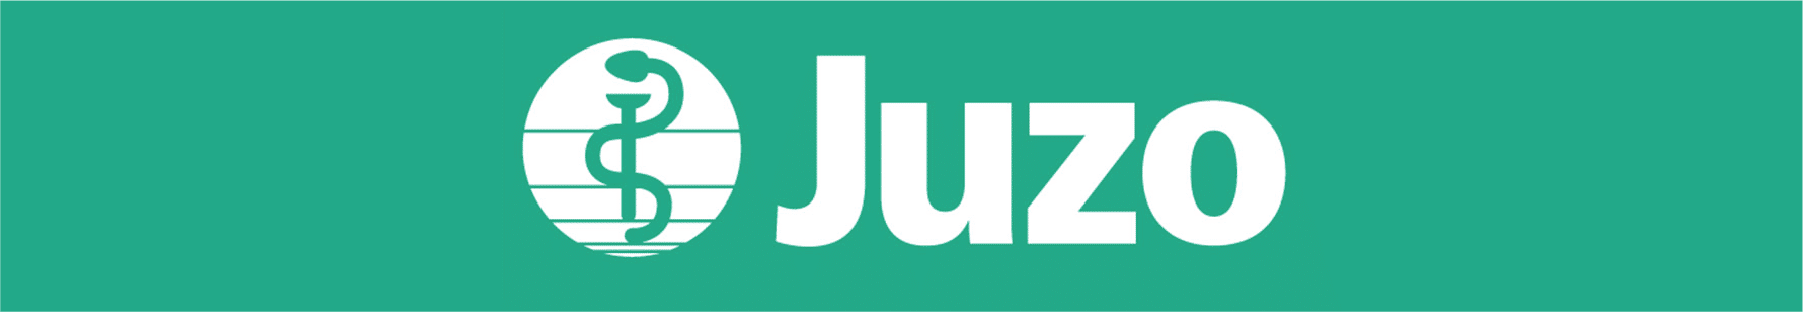 Juzo Logo Button